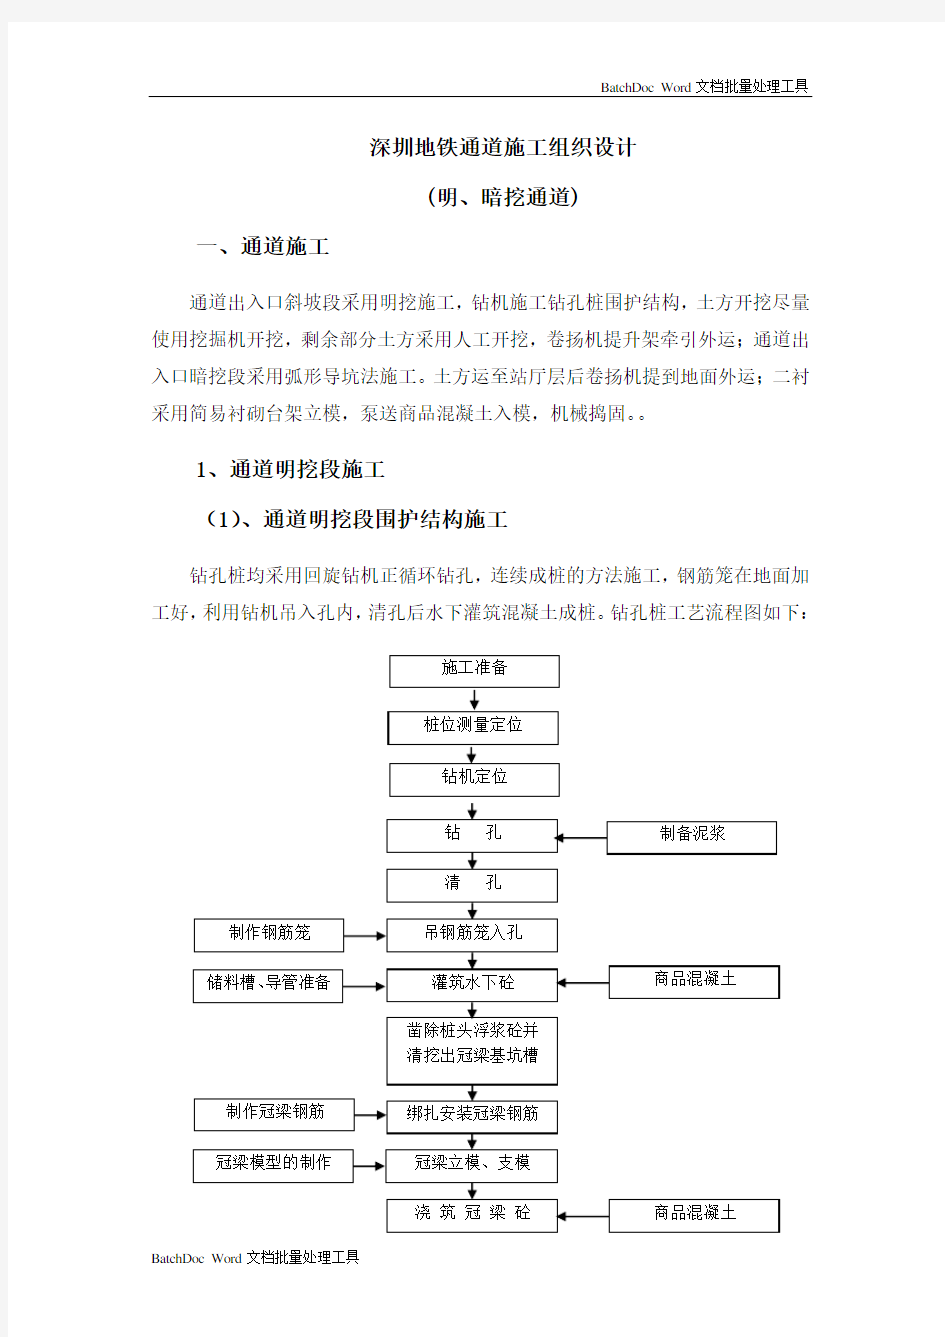 深圳地铁施工组织设计方案(明、暗挖)